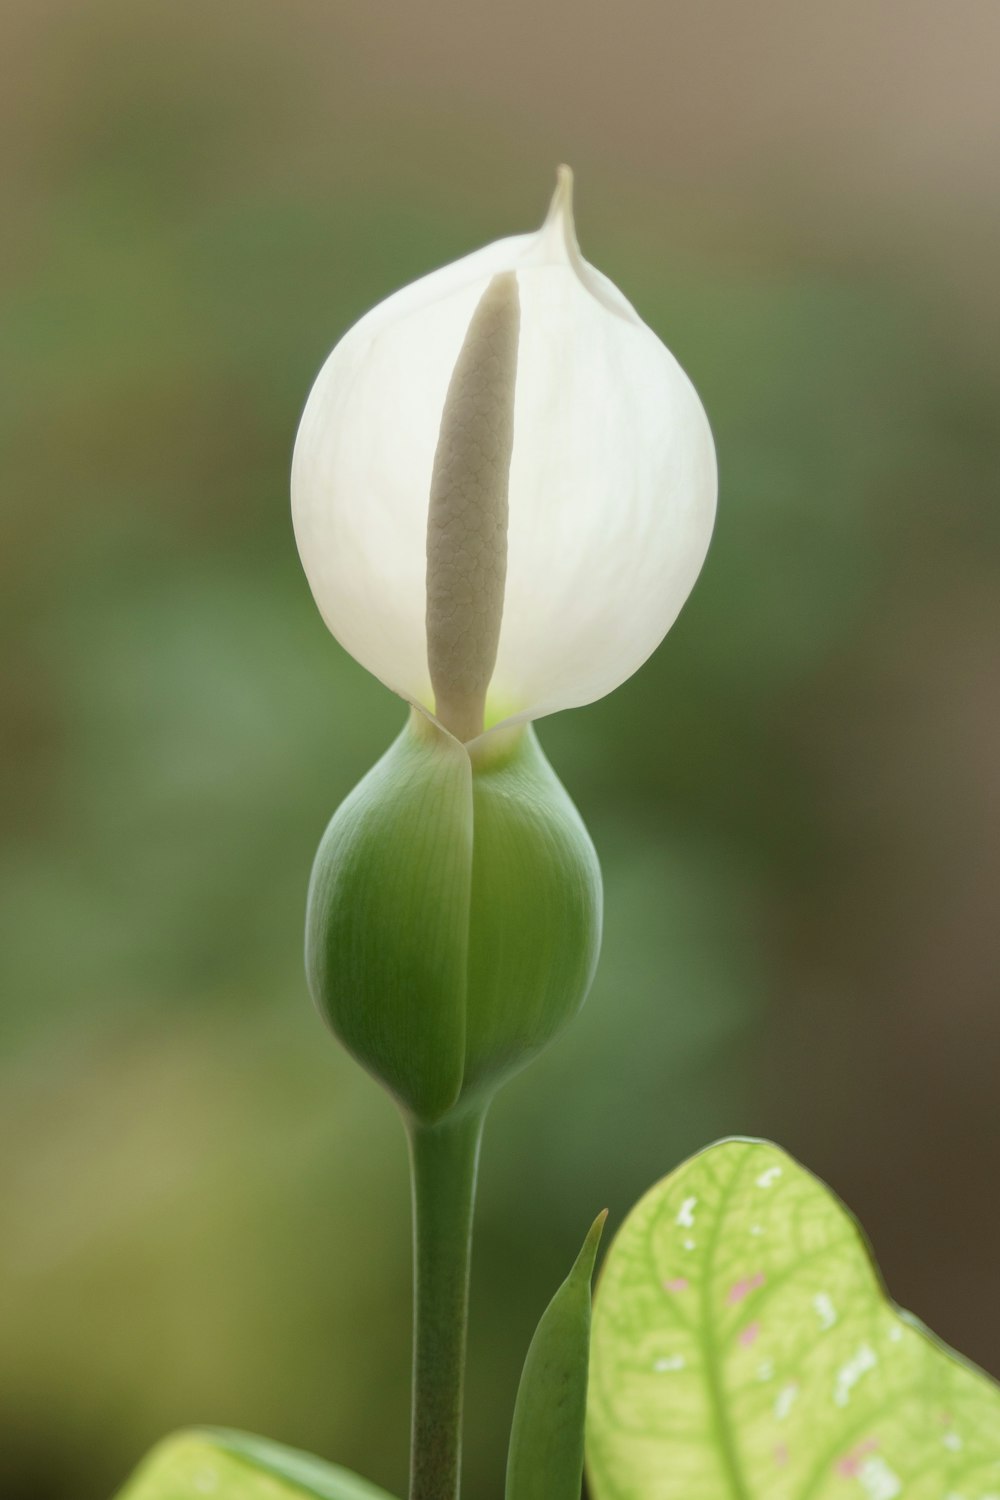 capullo floral blanco y verde